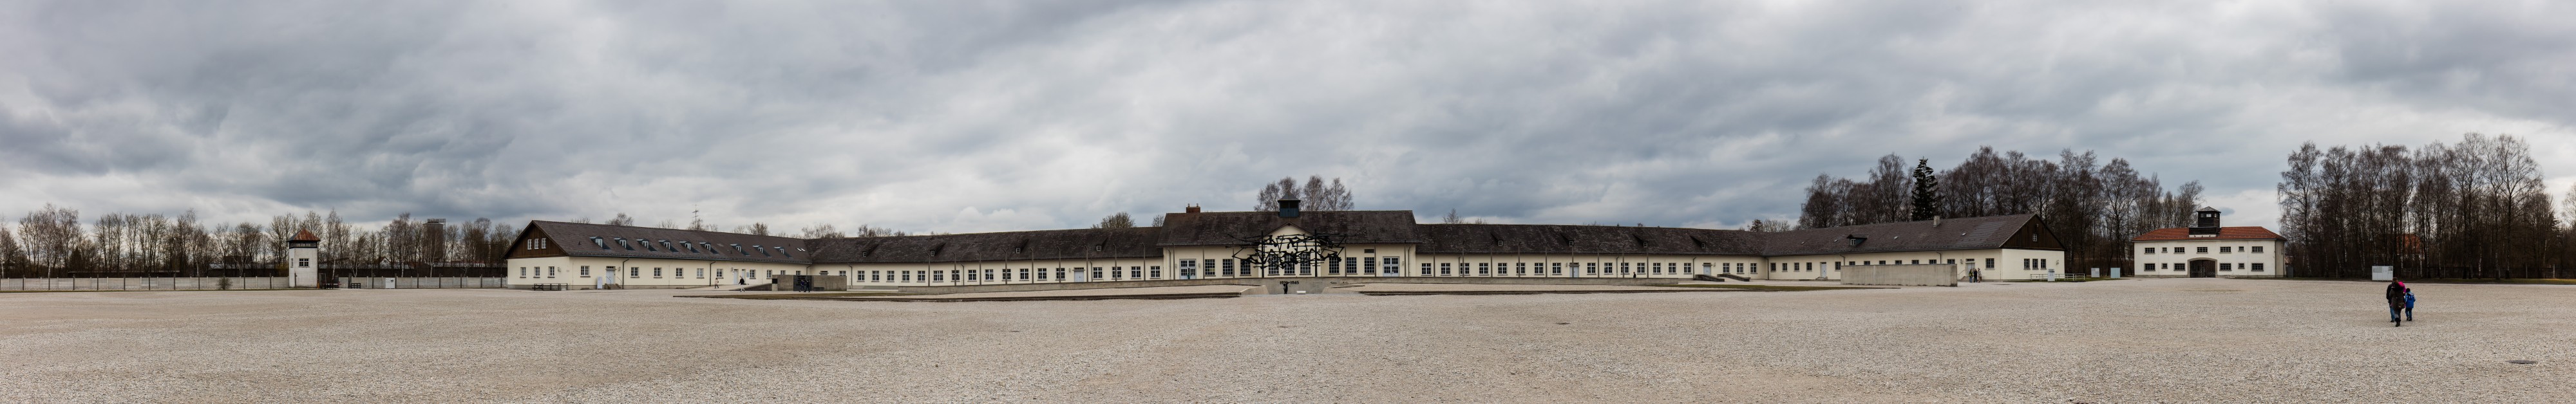 Comandancia, campo de concentración de Dachau, Alemania, 2016-03-05, DD 07-12 PAN